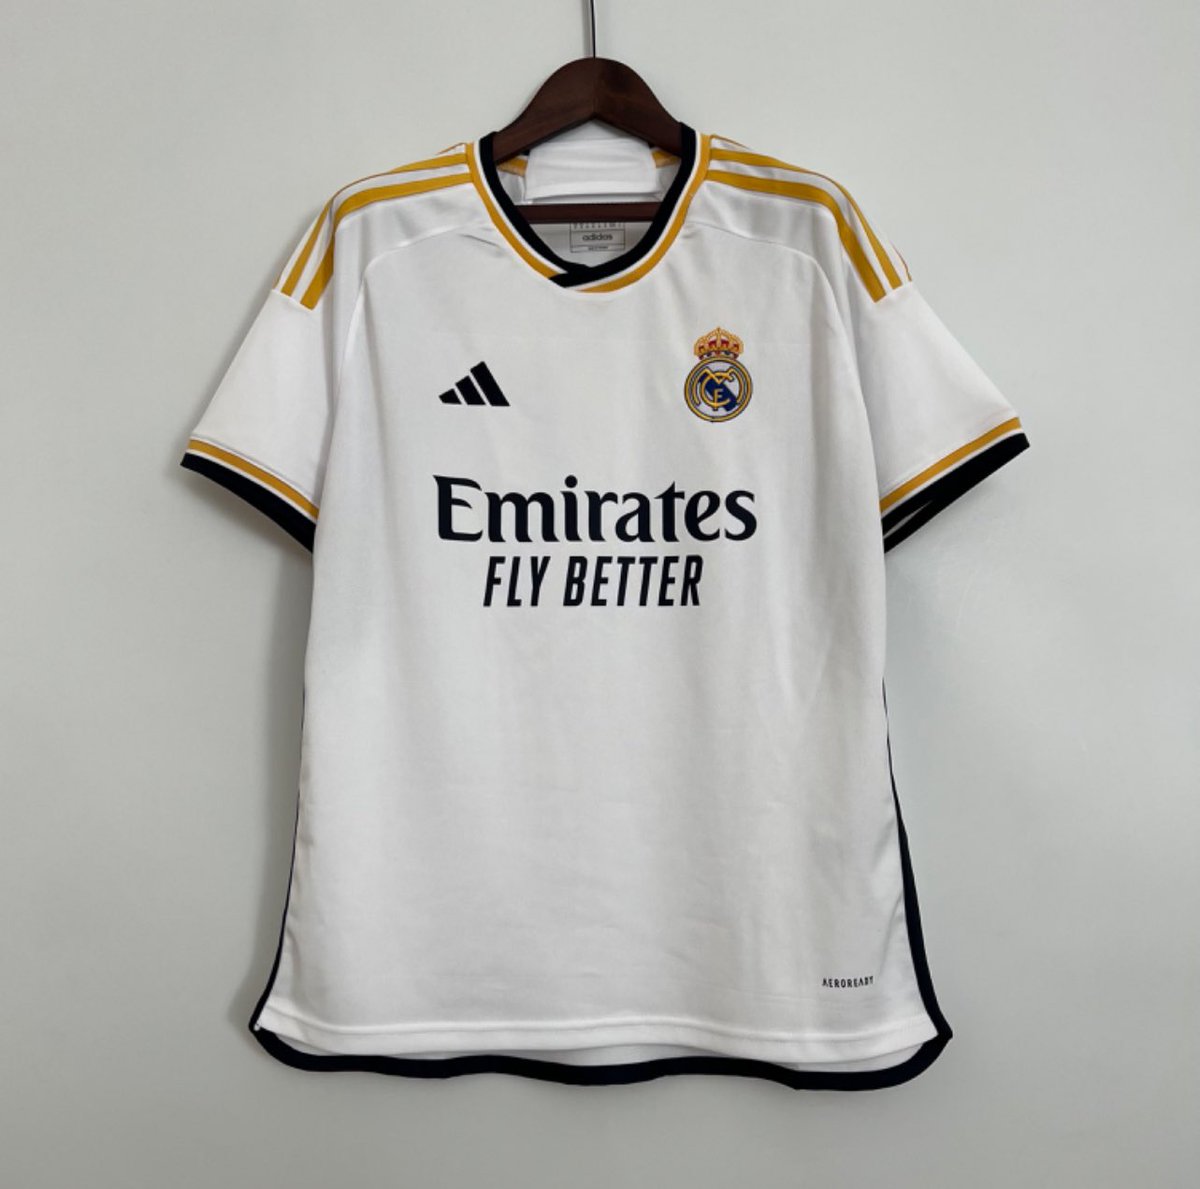 🚨 SORTEO INTERNACIONAL 🚨 Si el Real Madrid gana 🆚 Getafe, sortearemos la camiseta de Luka Modric entre uno de los que den RT a este tweet y nos sigan a mí y @Ctinfo_17 ⚪ - OPCIONAL: Mencionar a un amigo (doble participación)